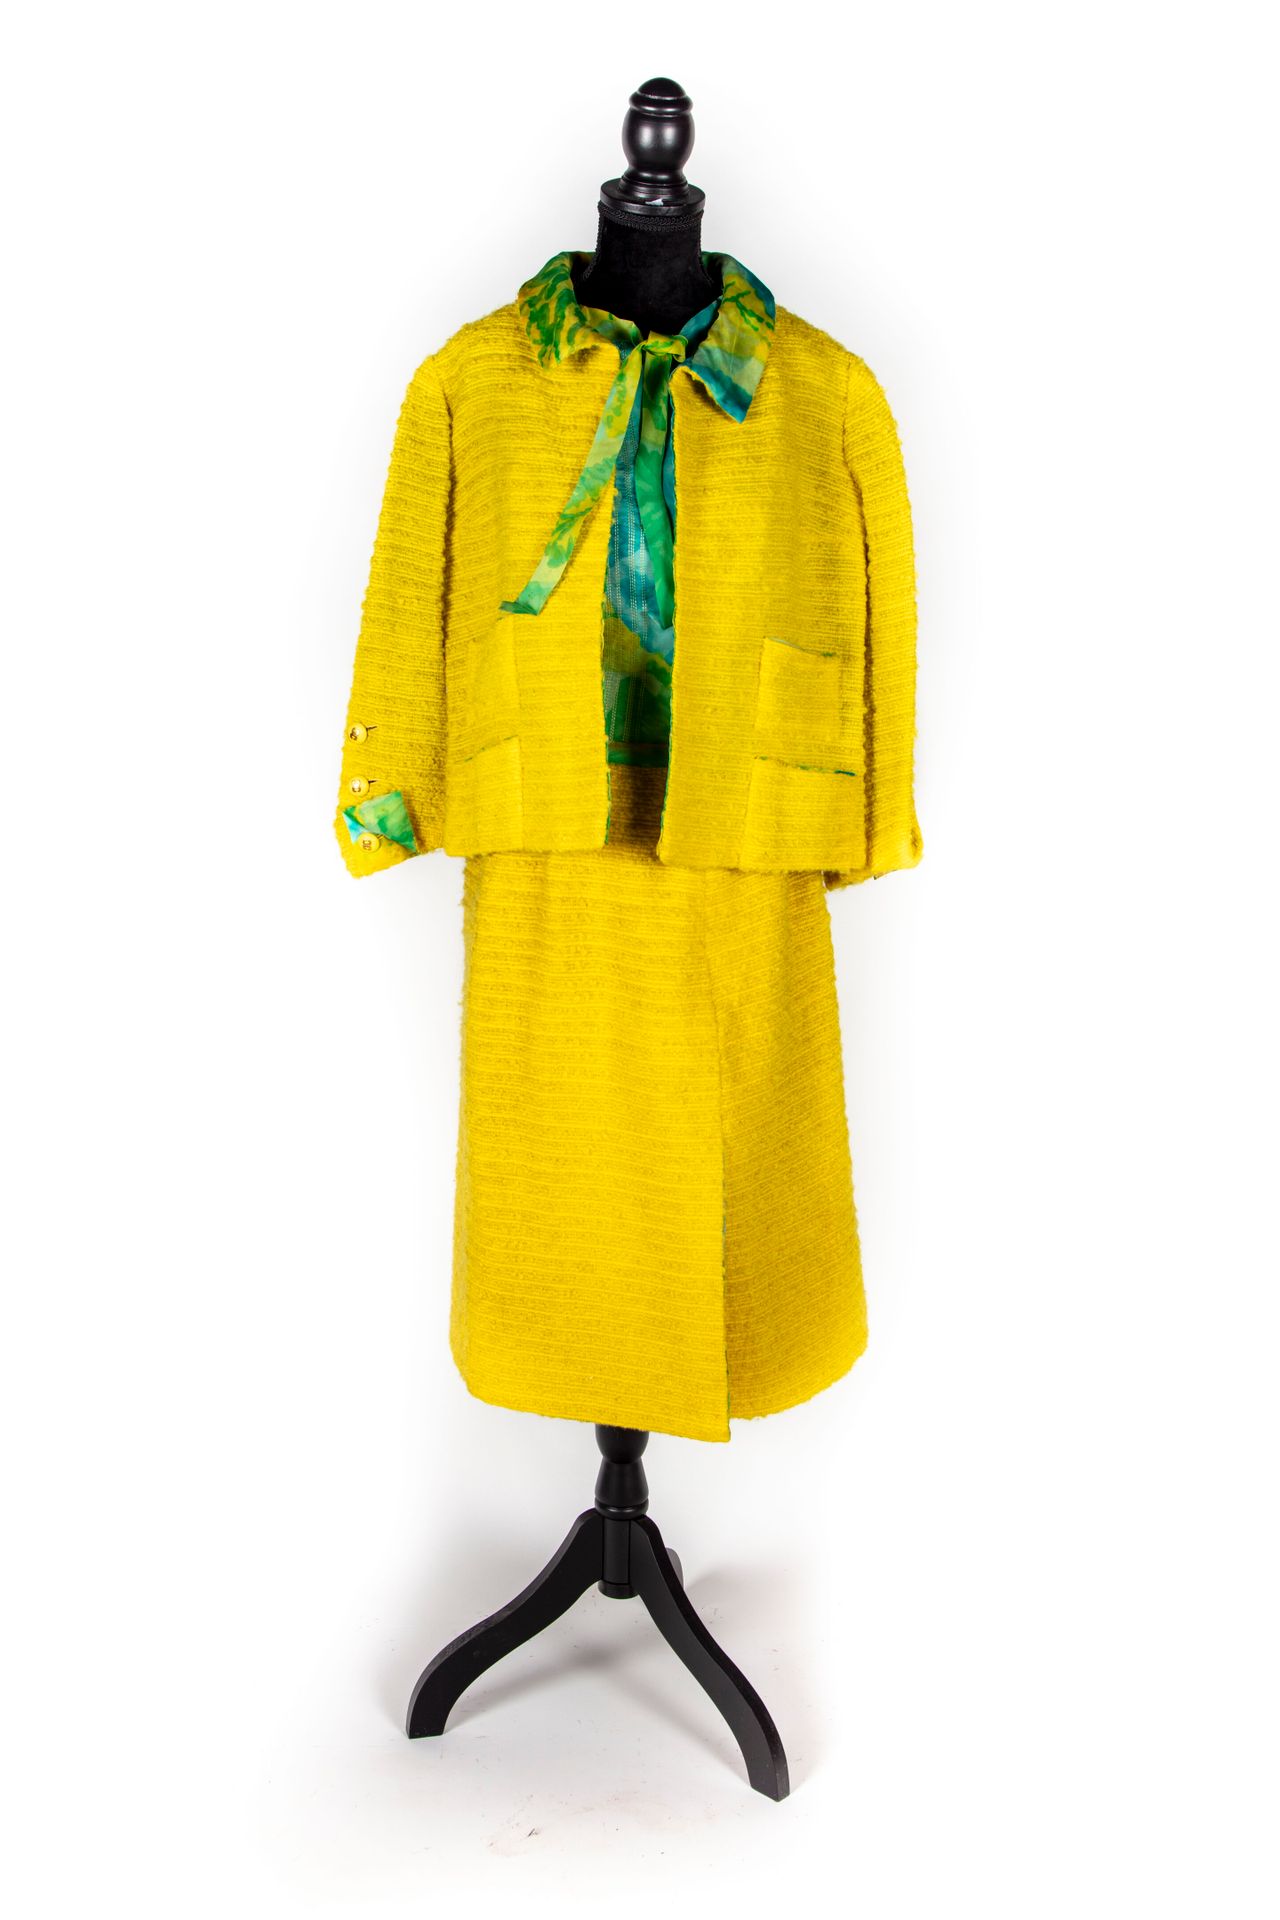 CHANEL CHANEL - París

Colección de Alta Costura

Traje de falda de lana acolcha&hellip;